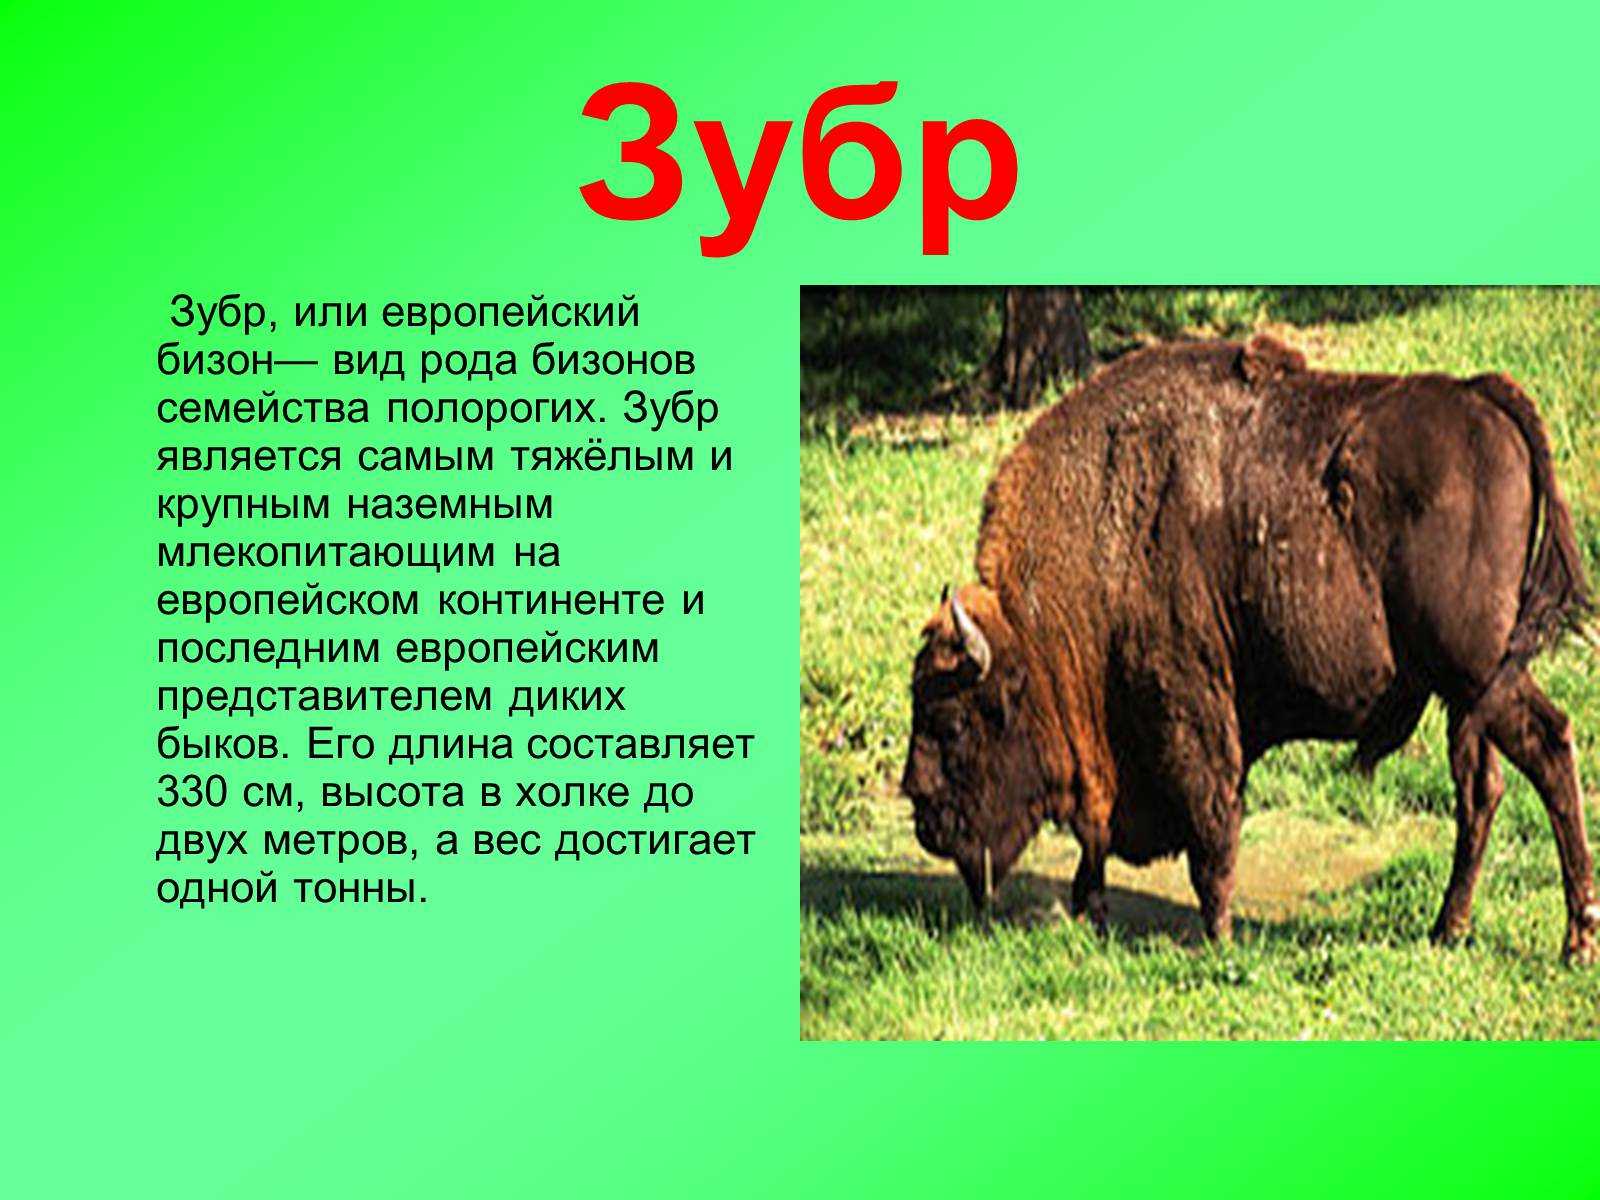 Зубр (европейский бизон) - млекопитающее животное, строение, питание, обитание, описание, фото, картинки, интересные факты